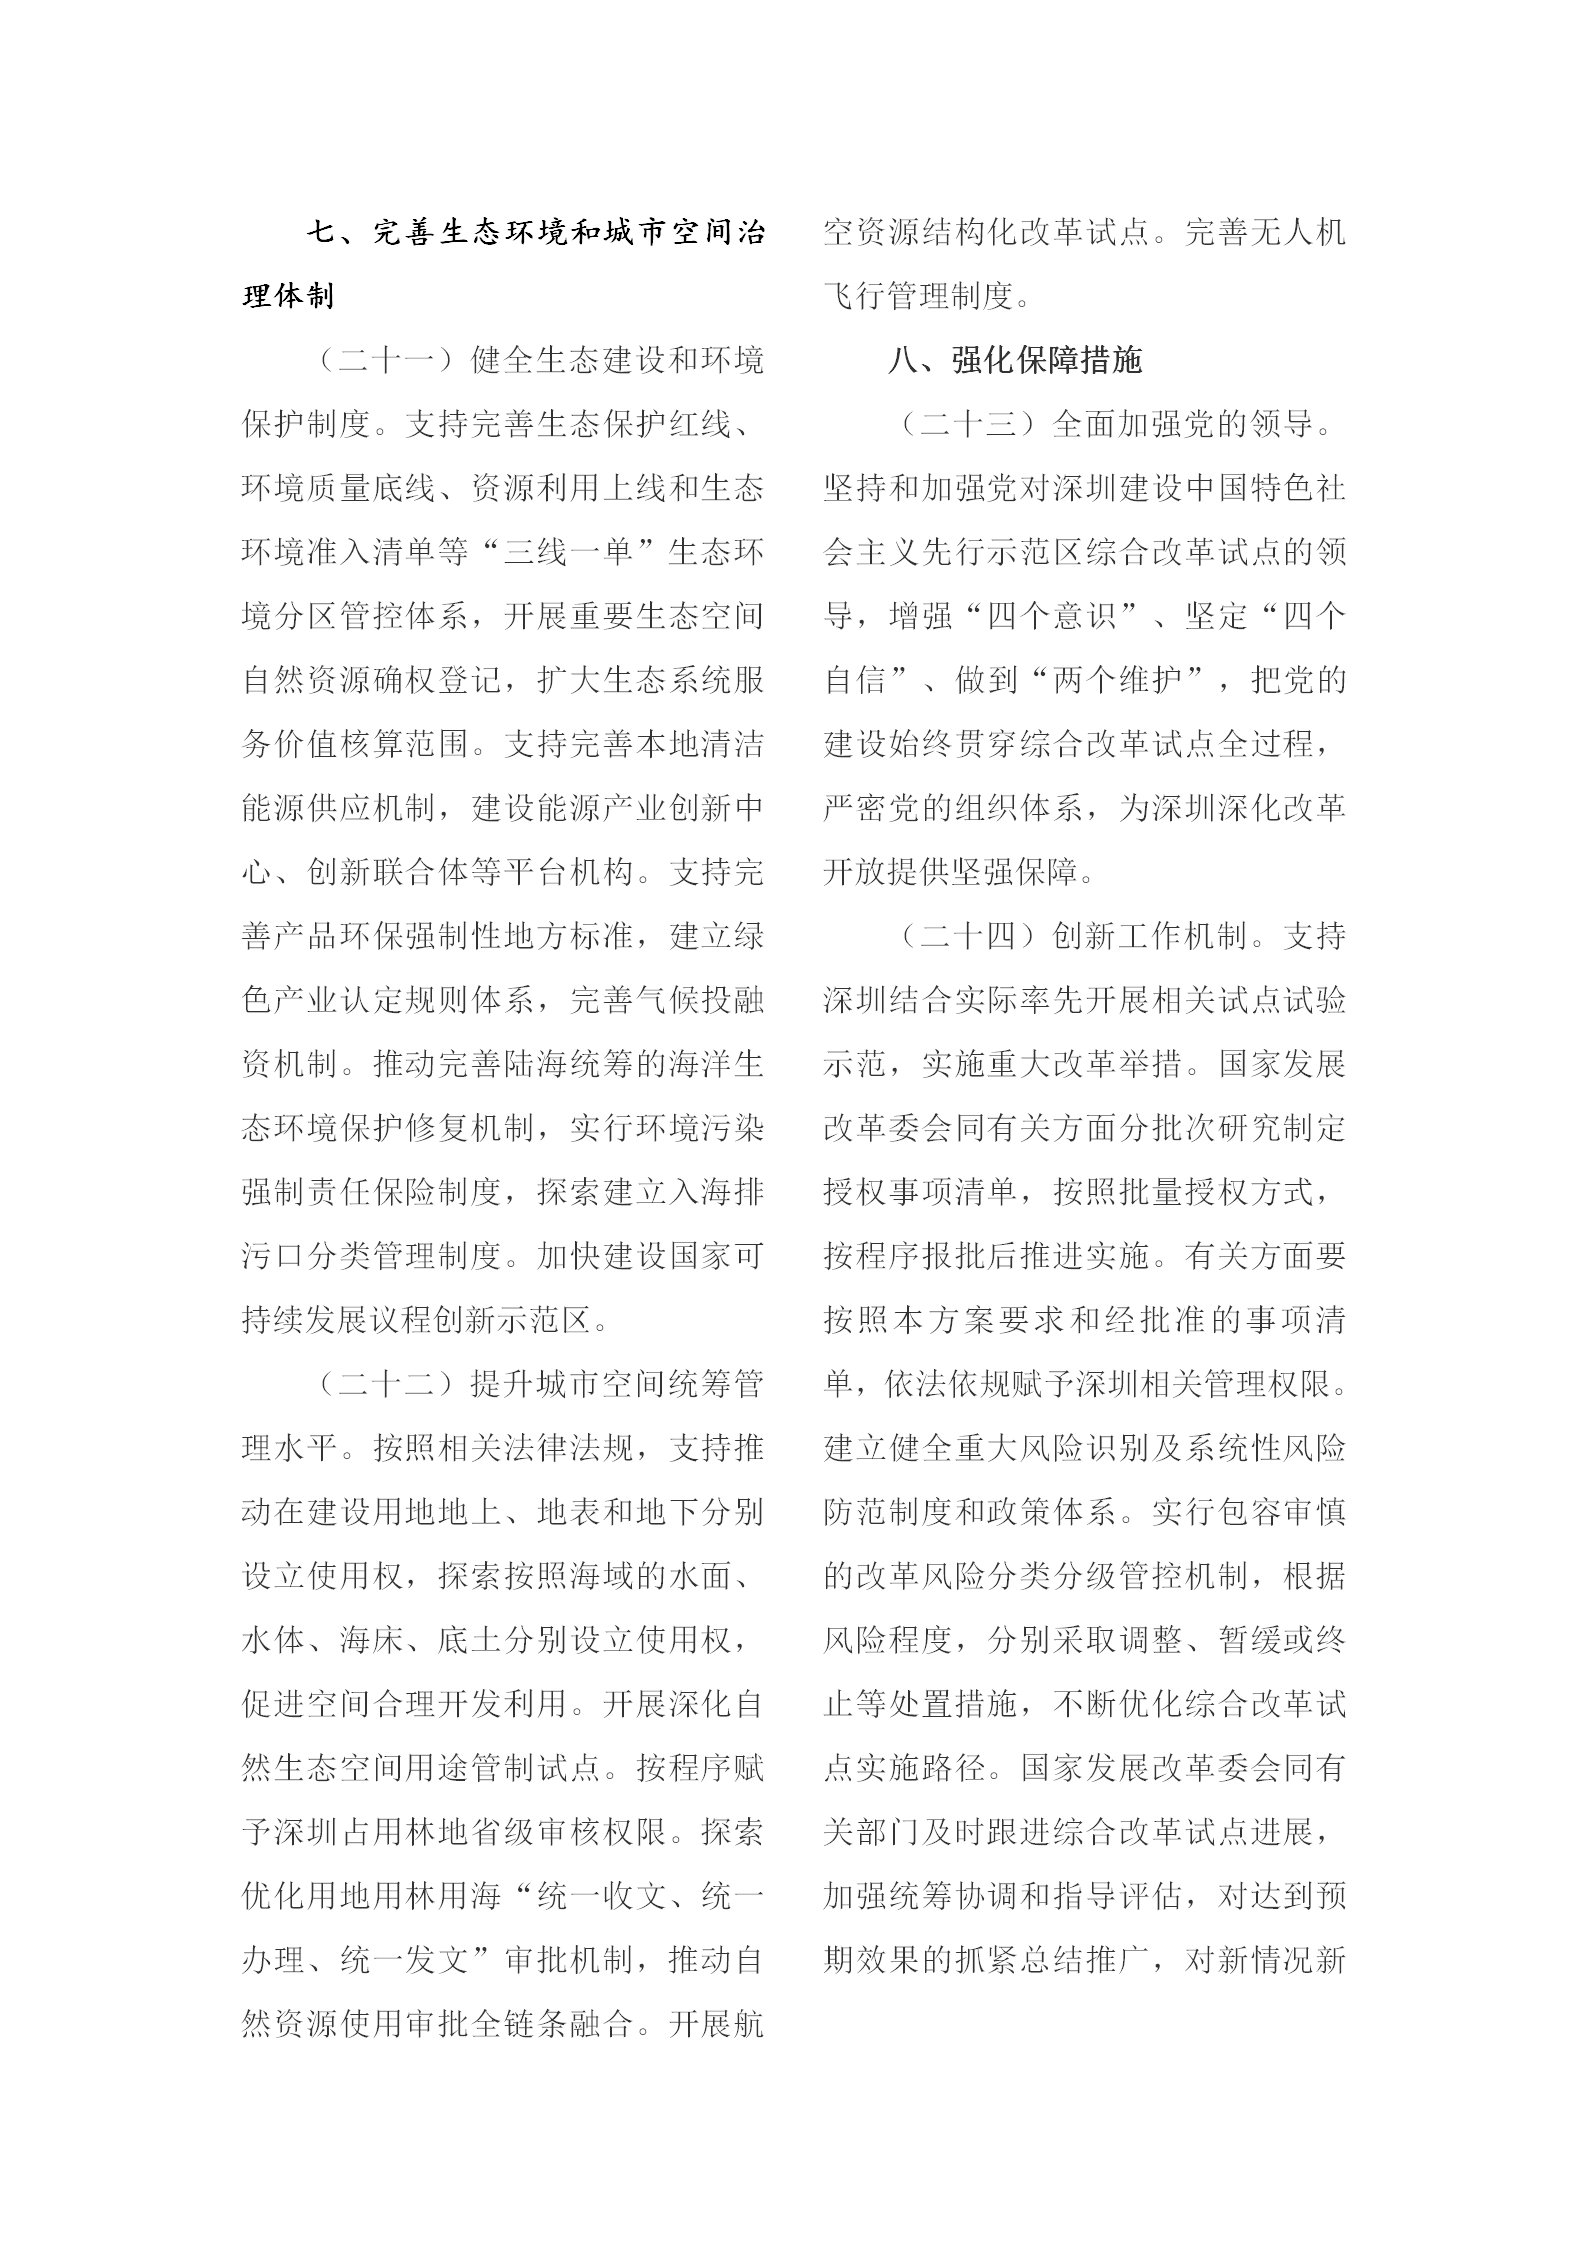 1-5 深圳建设中国特色社会主义先行示范区综合改革试点实施方案_06.png